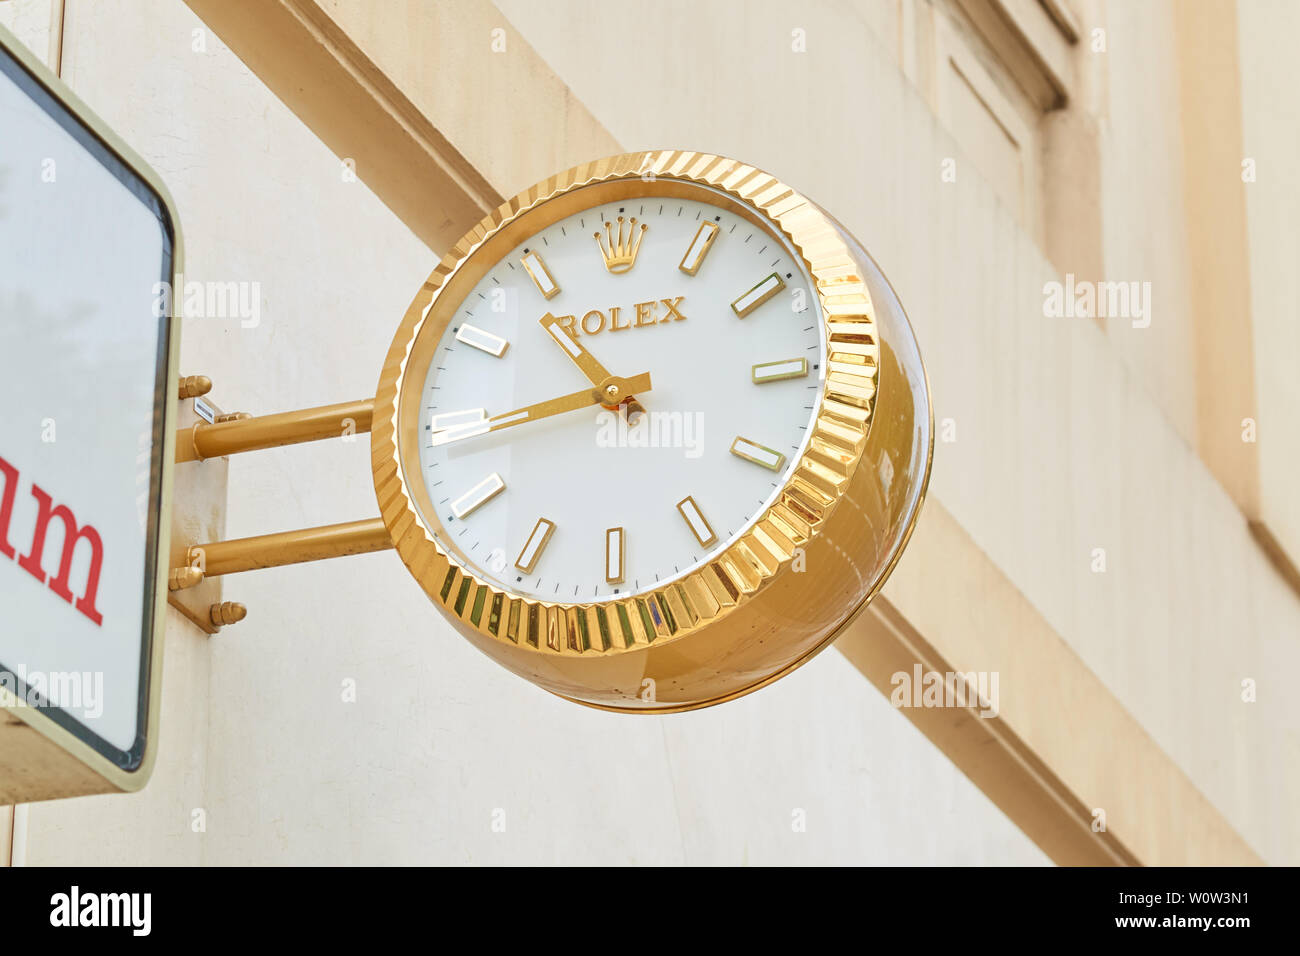 MONTE CARLO, Monaco - Agosto 20, 2016: Rolex orologio d'oro vicino al segno di gioielli, negozio di lusso a Monte Carlo, Monaco. Foto Stock